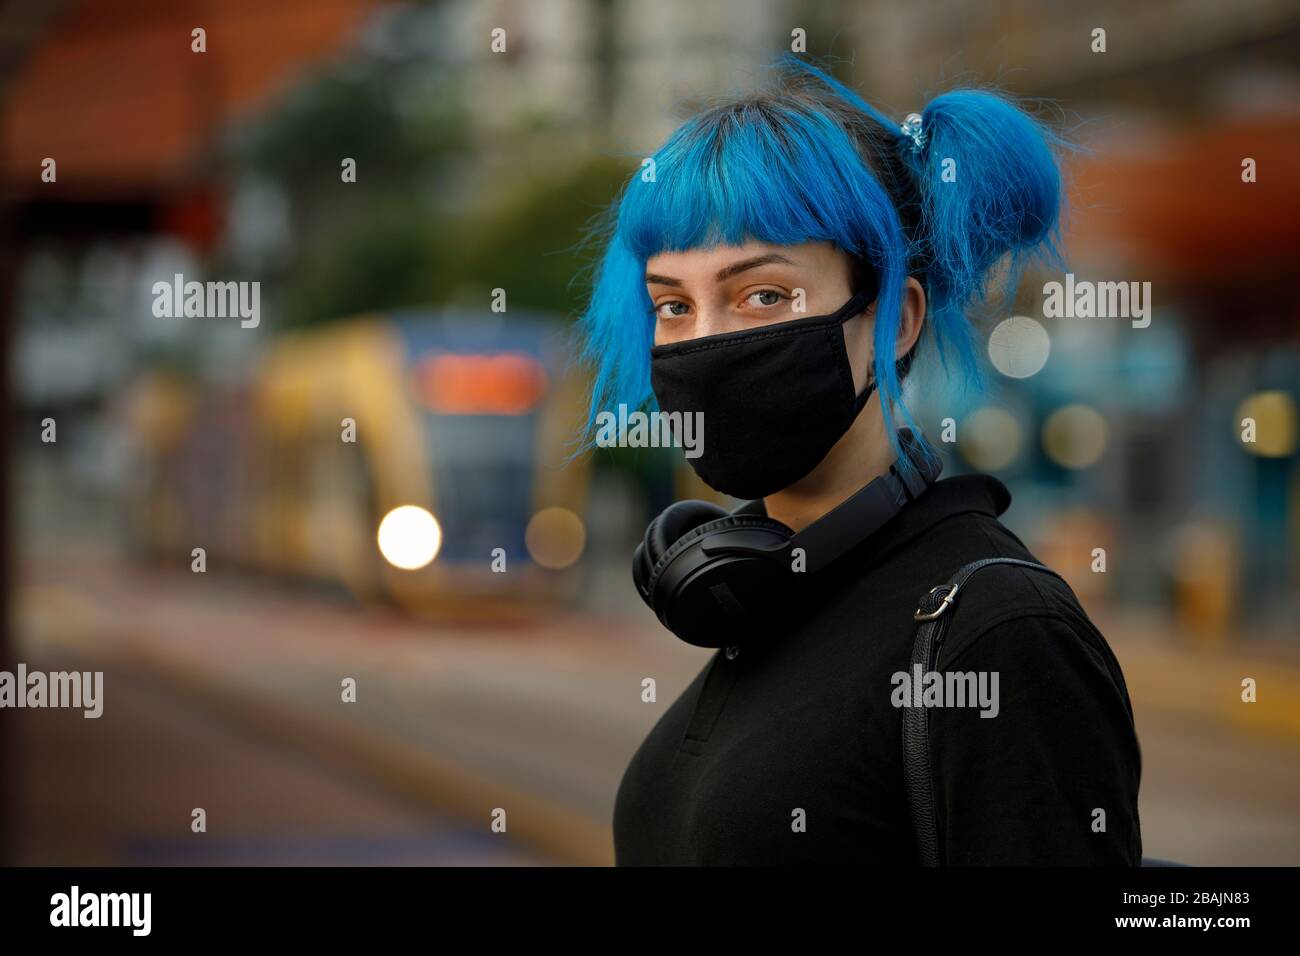 coronavirus maschera viso medico alla moda indossata da giovane studentessa con capelli blu stile anime alla fermata del tram. inquinamento dell'aria o stop covid-19 concetto Foto Stock